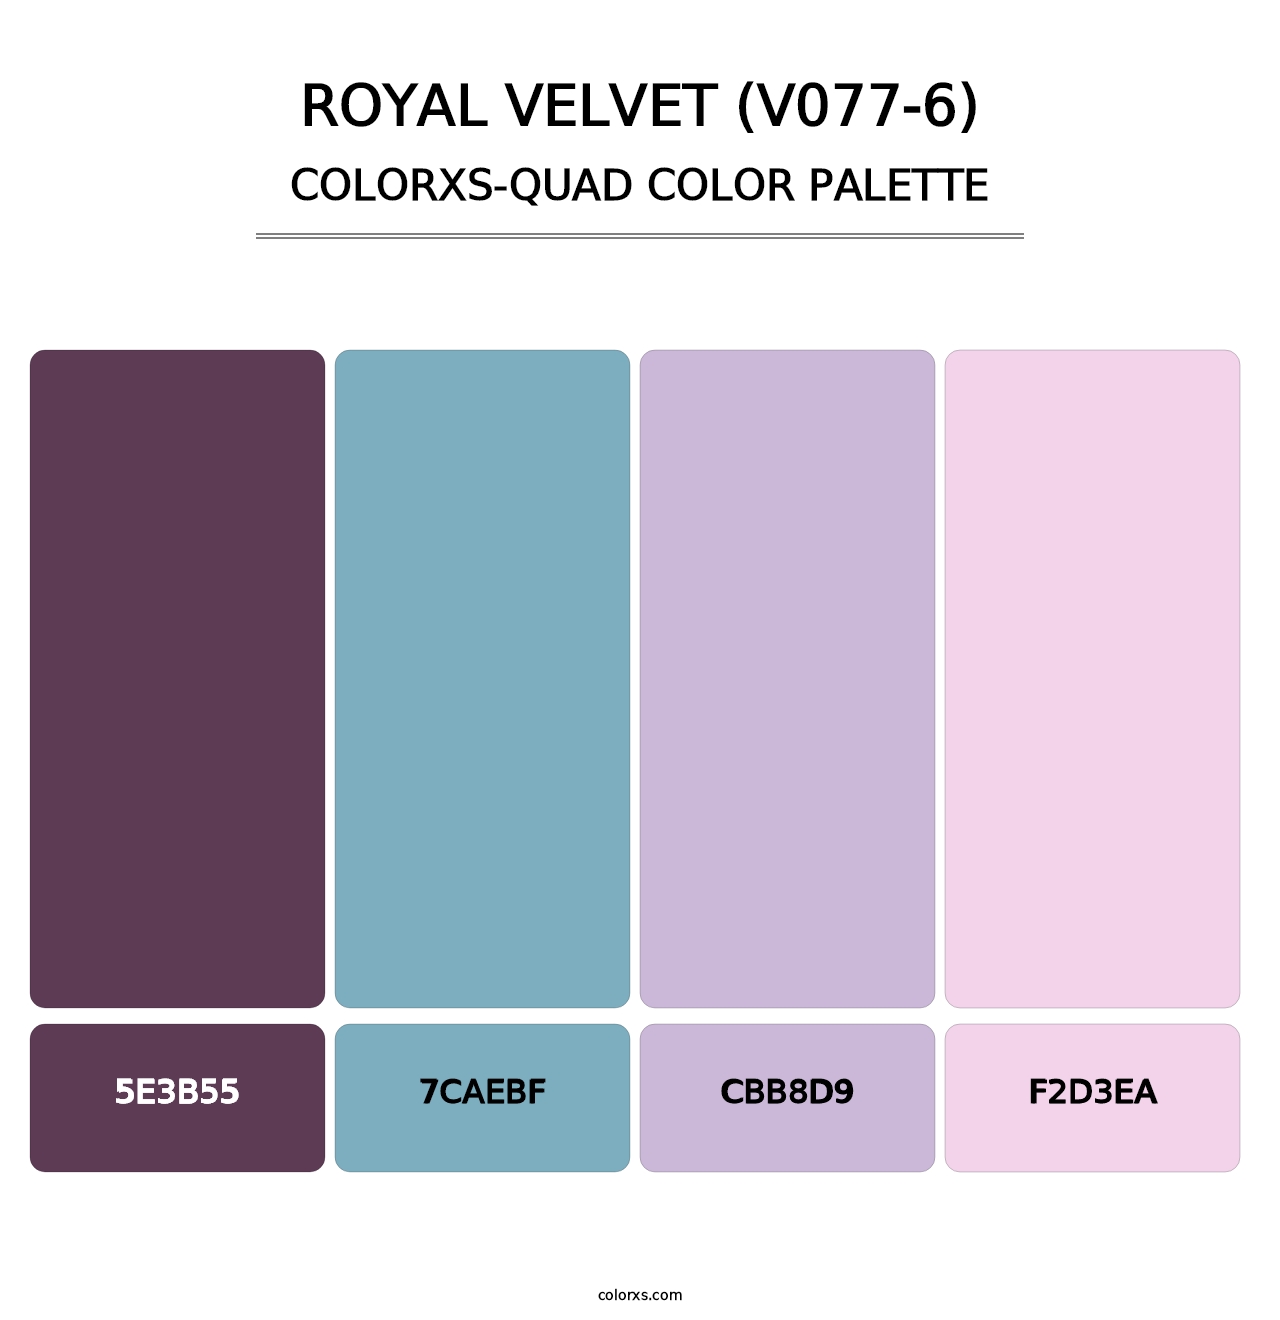 Royal Velvet (V077-6) - Colorxs Quad Palette